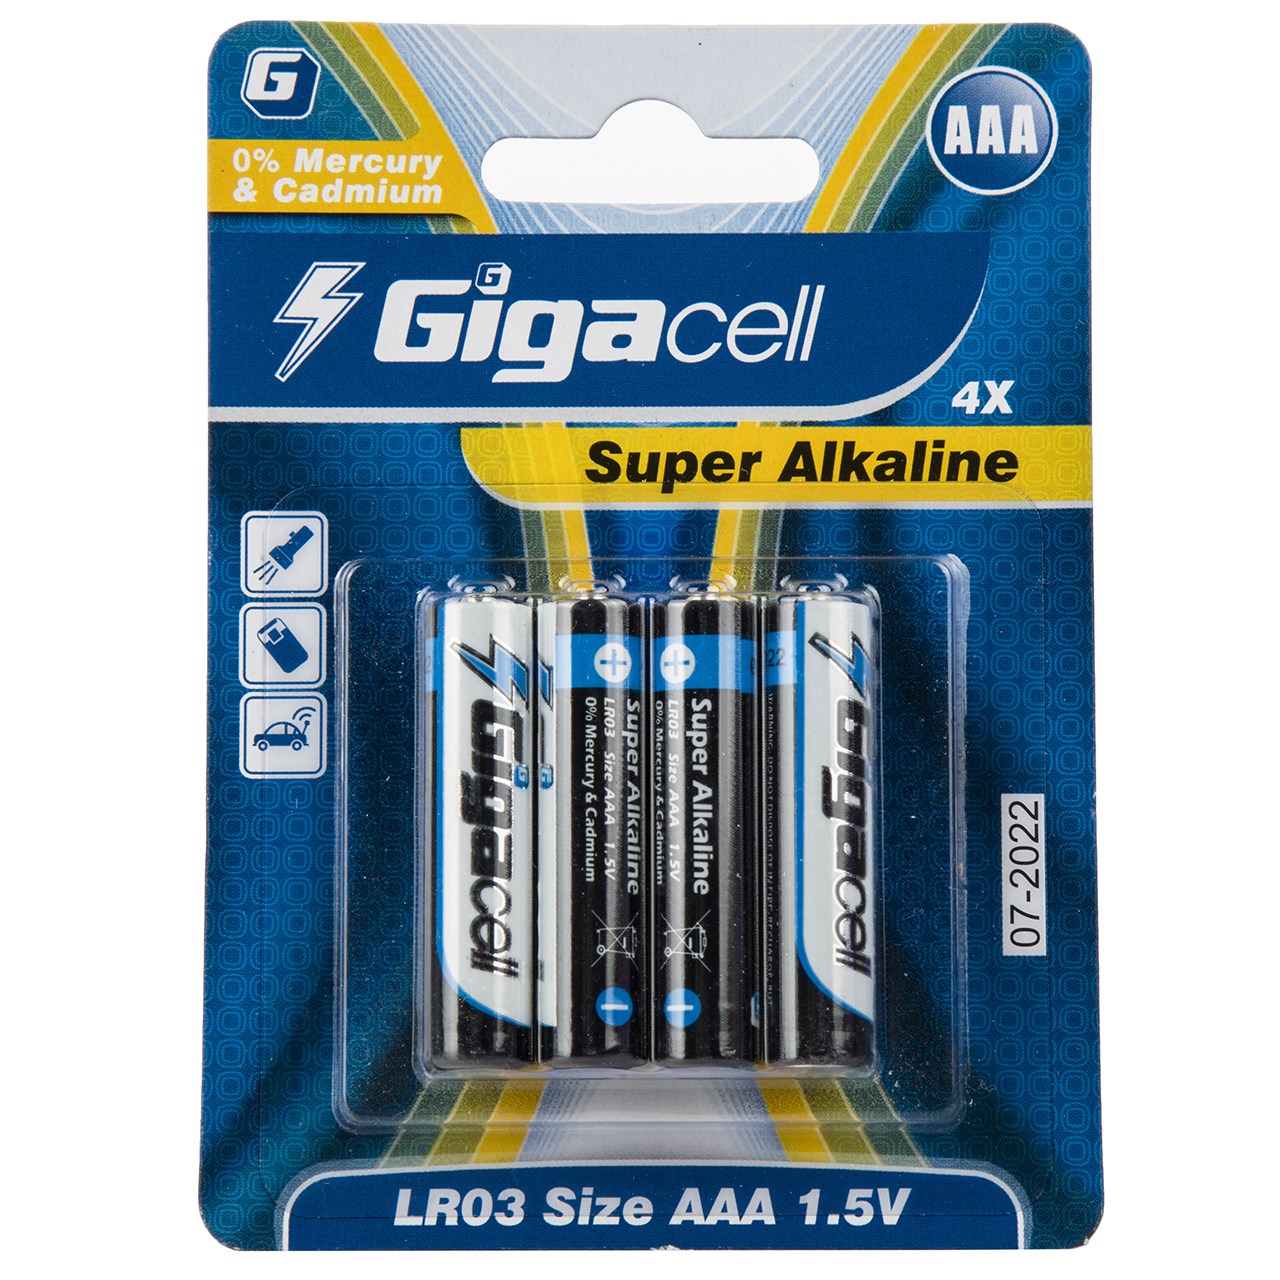 باتری نیم قلمی گیگاسل مدل Super Alkaline - بسته 4 عددی